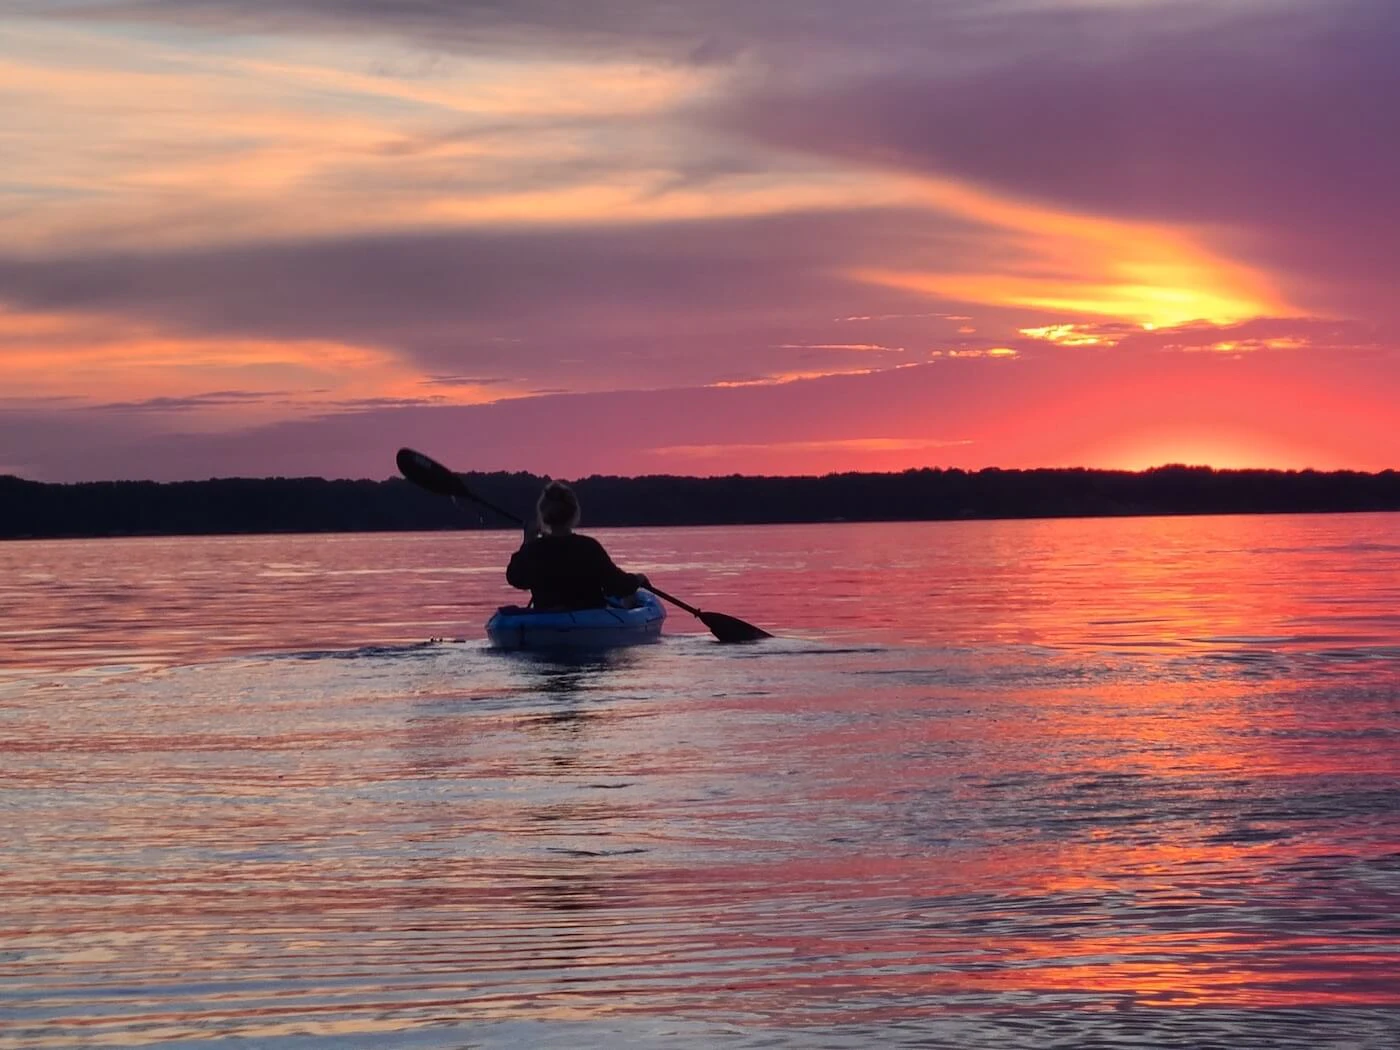 Kayaking the sunset at Torch Lake. Image via Shutterstock